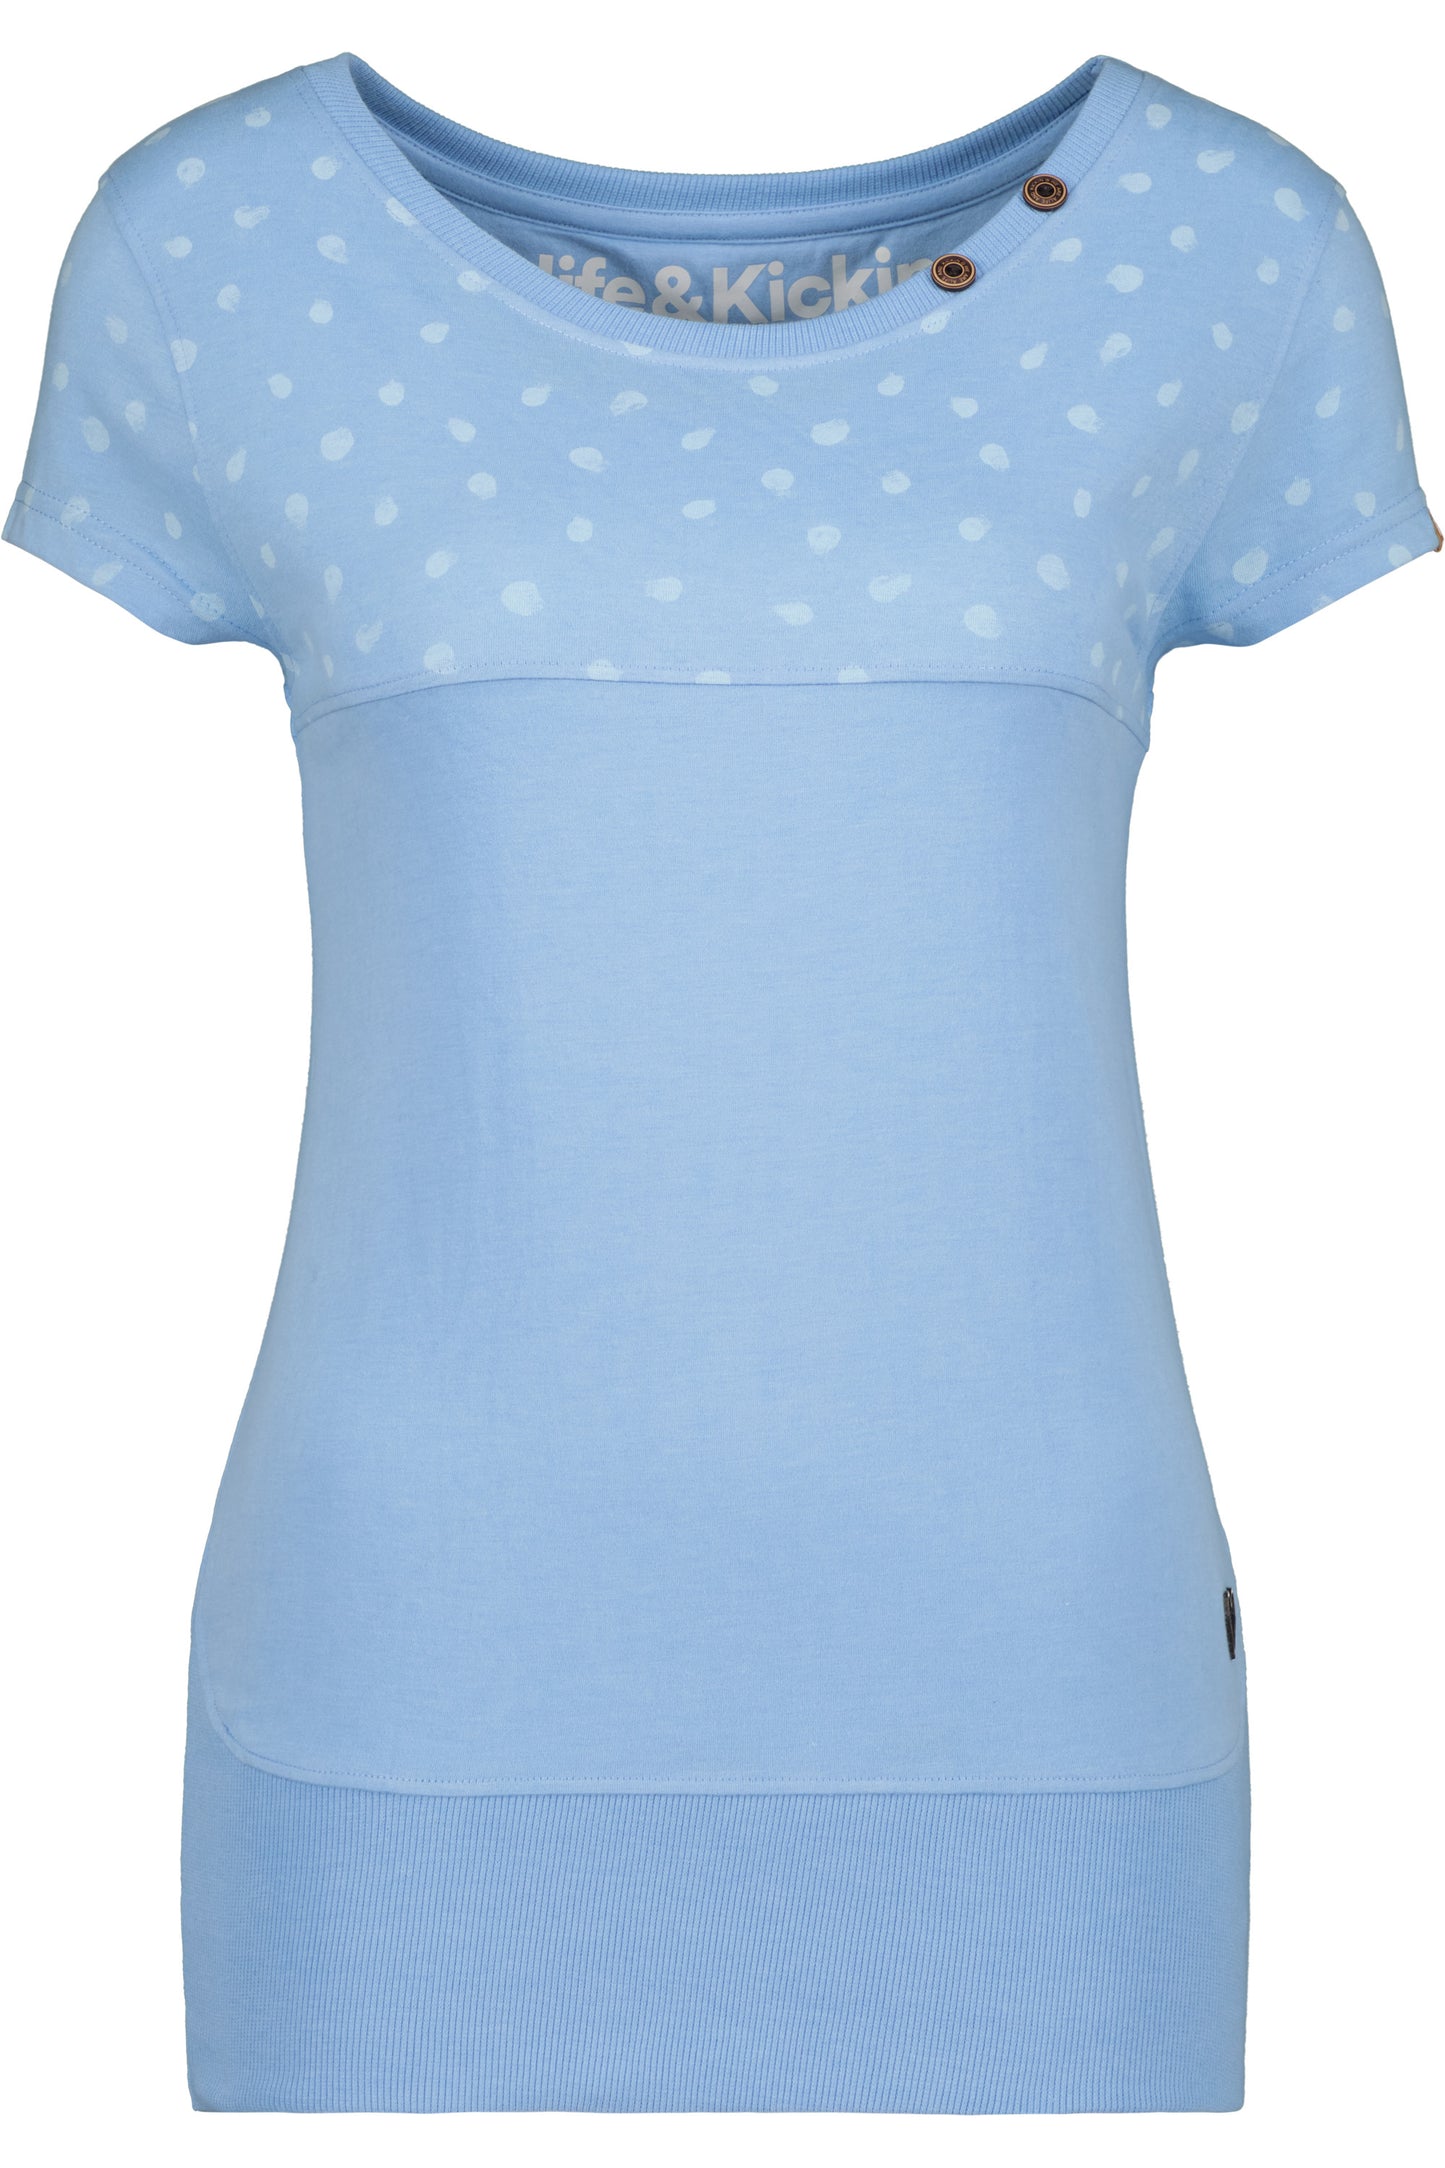 Damen Freizeitshirt CoraAK B: Vielseitig kombinierbarer Style Hellblau